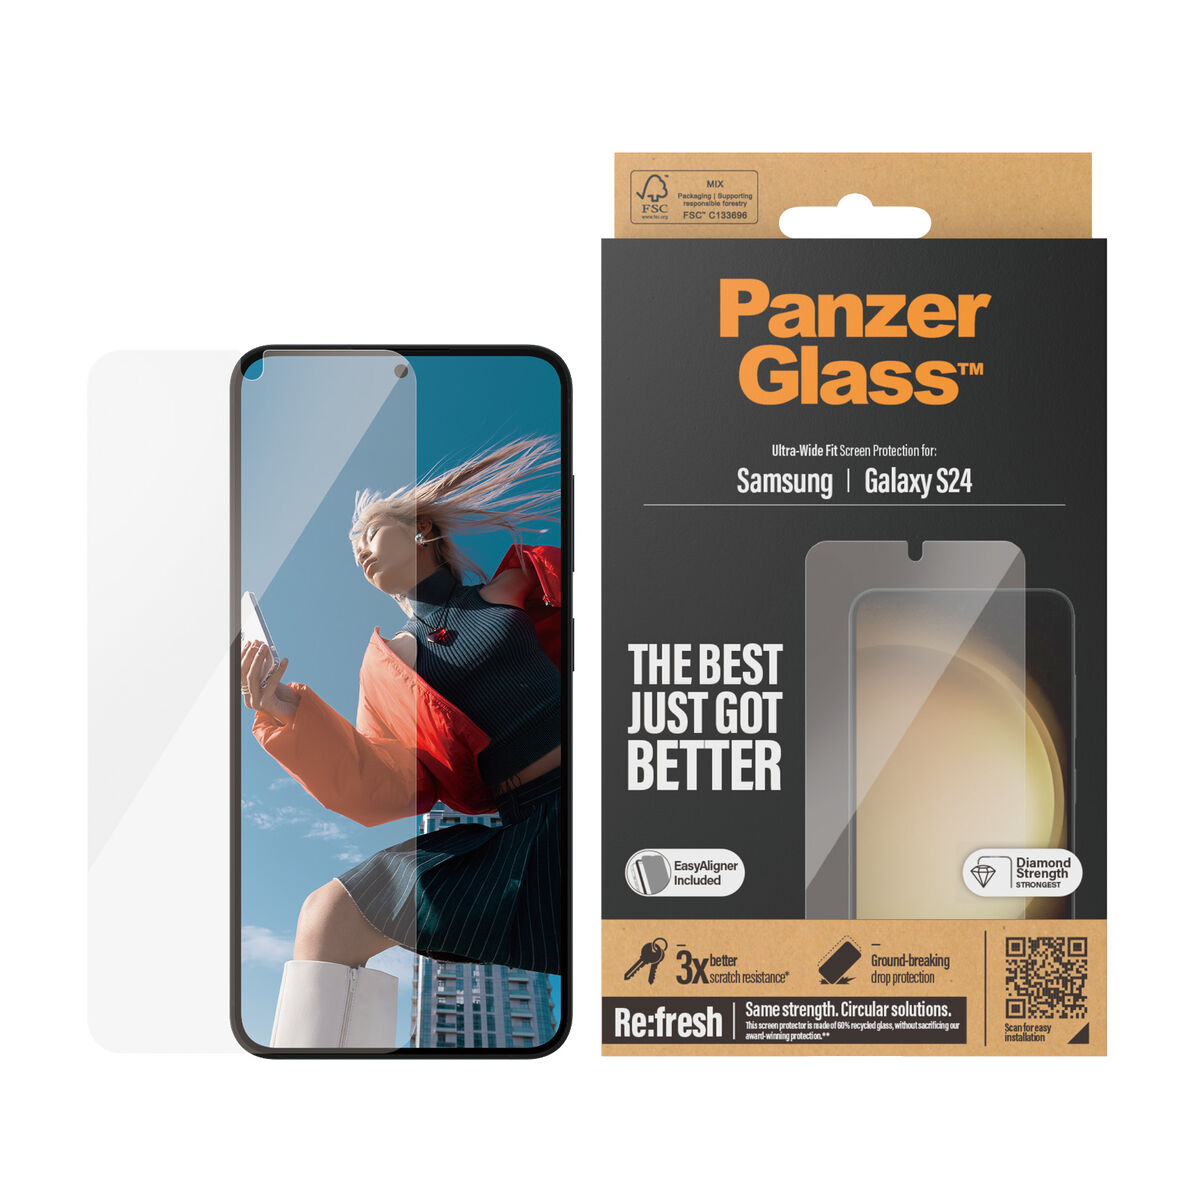 Osta tuote Näytönsuoja Panzer Glass 7350 Samsung Galaxy S24 verkkokaupastamme Korhone: Tietokoneet & Elektroniikka 10% alennuksella koodilla KORHONE